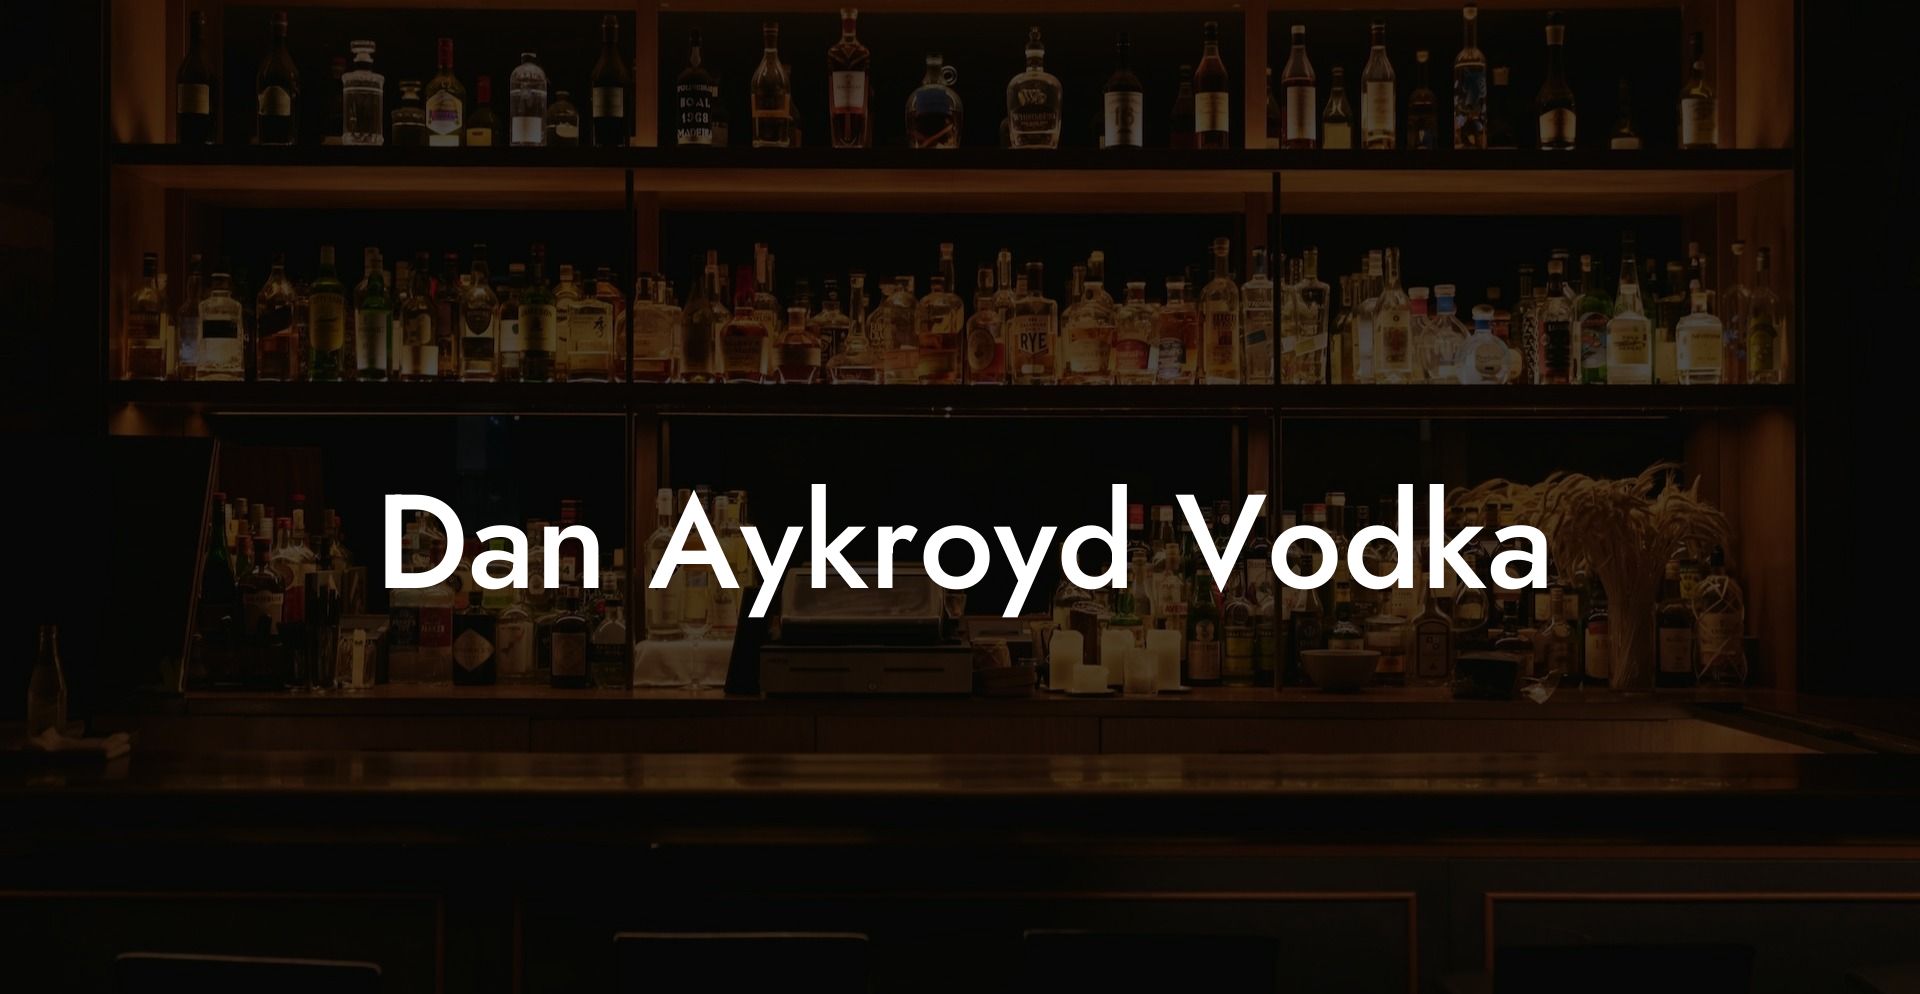 Dan Aykroyd Vodka